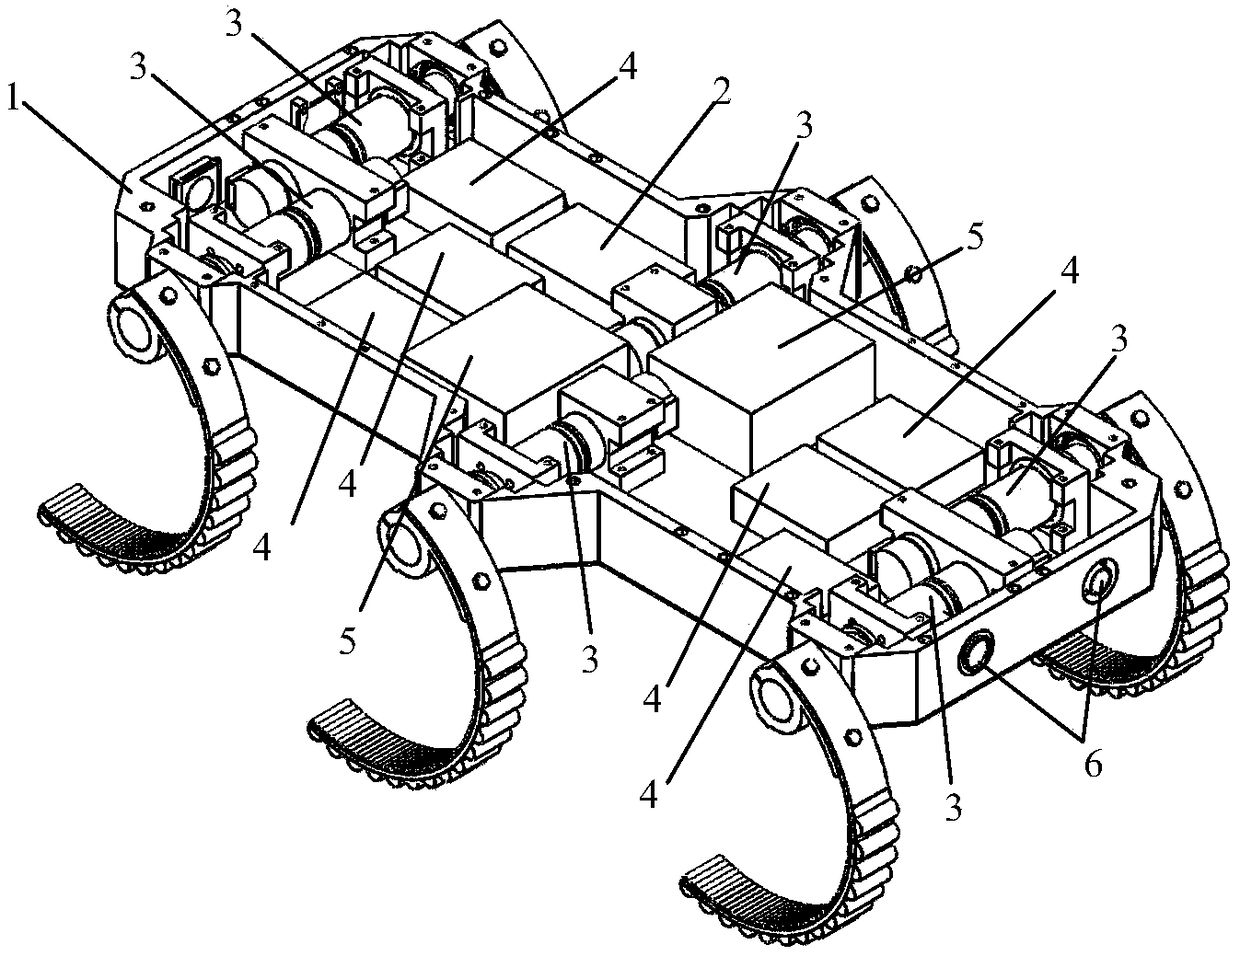 A hexapod bionic robot